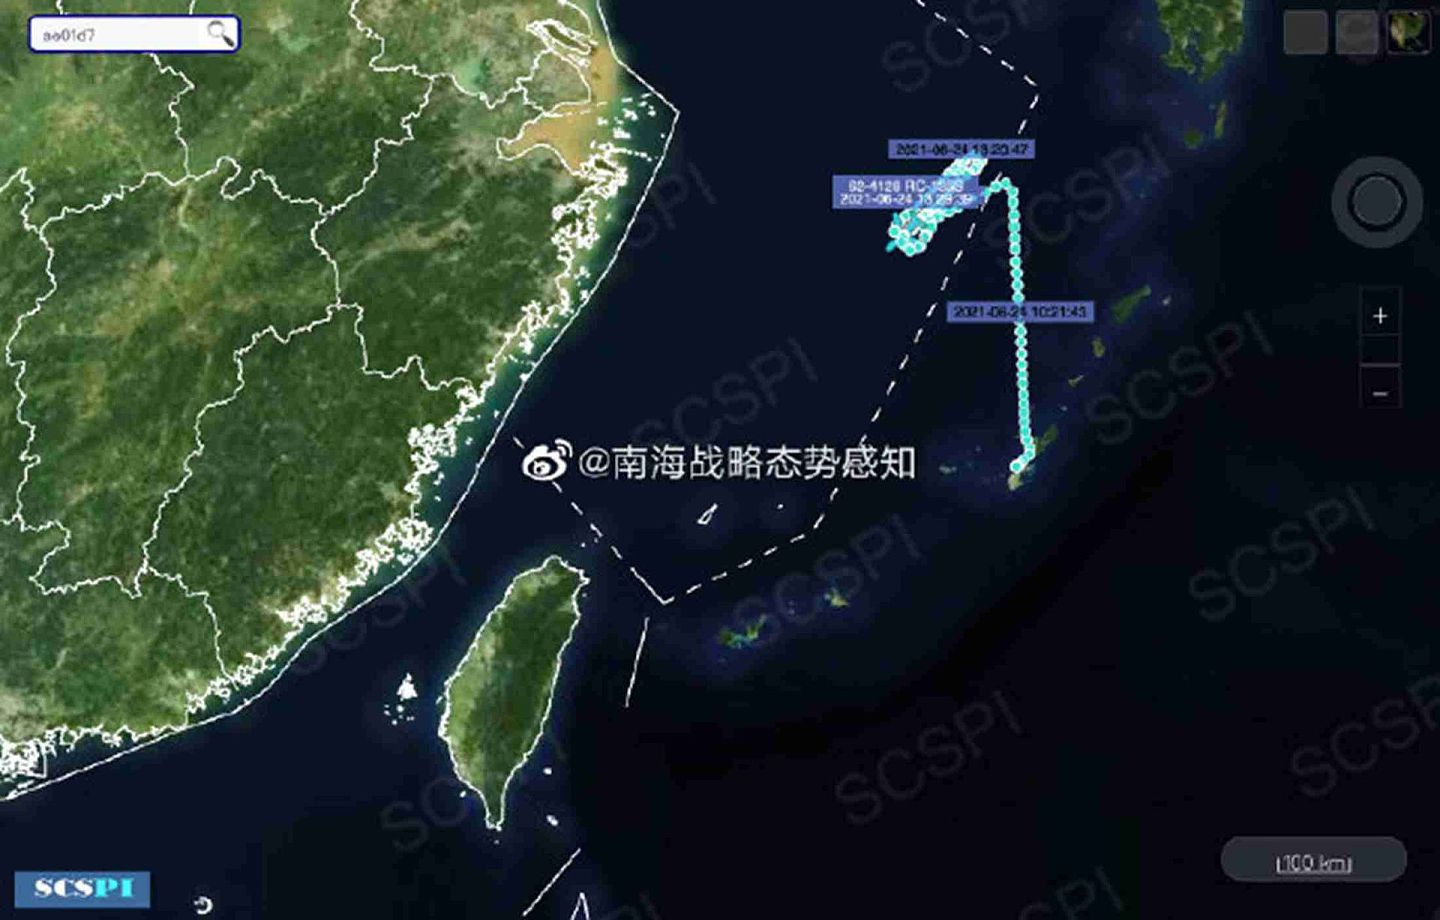 隶属北京大学海洋研究院的南海战略态势感知称，6月24日13时许，美空军1架RC-135W电子侦察机进入南海开展侦察机行动。而与此同时，美军另有1架RC-135S导弹监视机正在东海上空盘旋。（微博@南海战略态势感知）